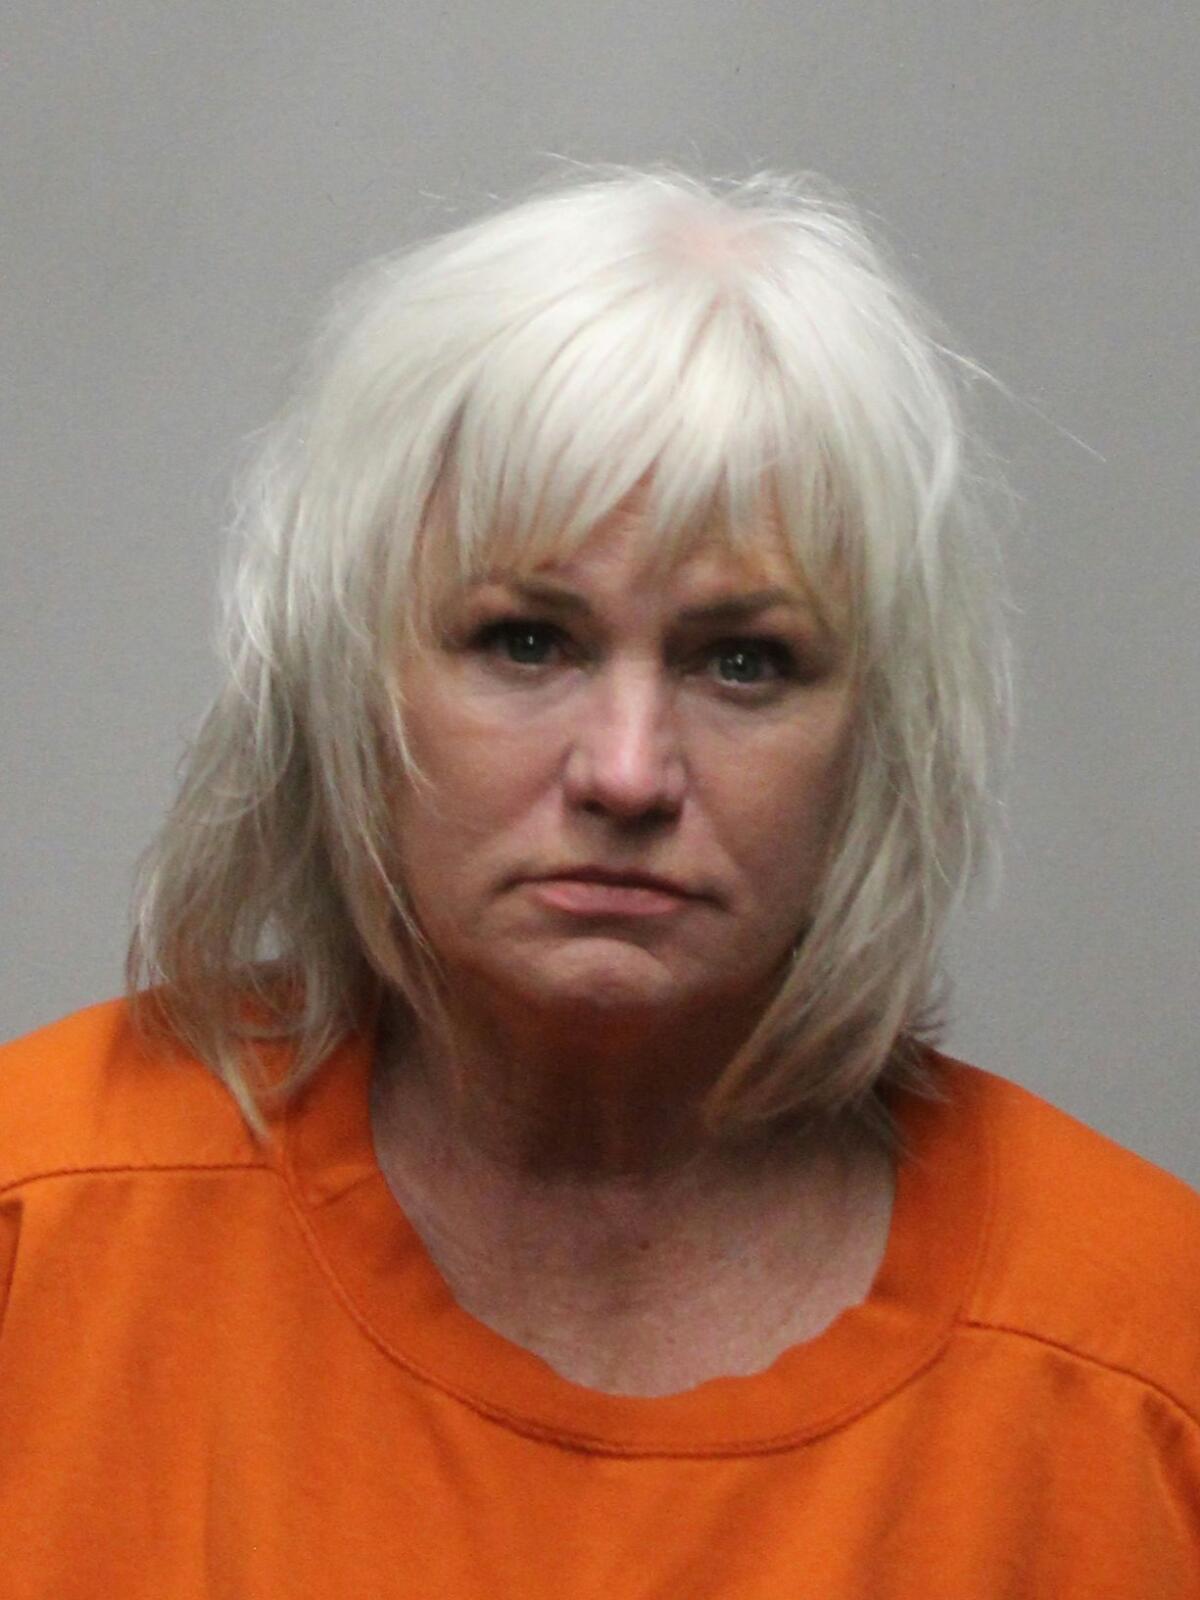 Wendy Munson wearing an orange crewneck shirt in a police booking mugshot